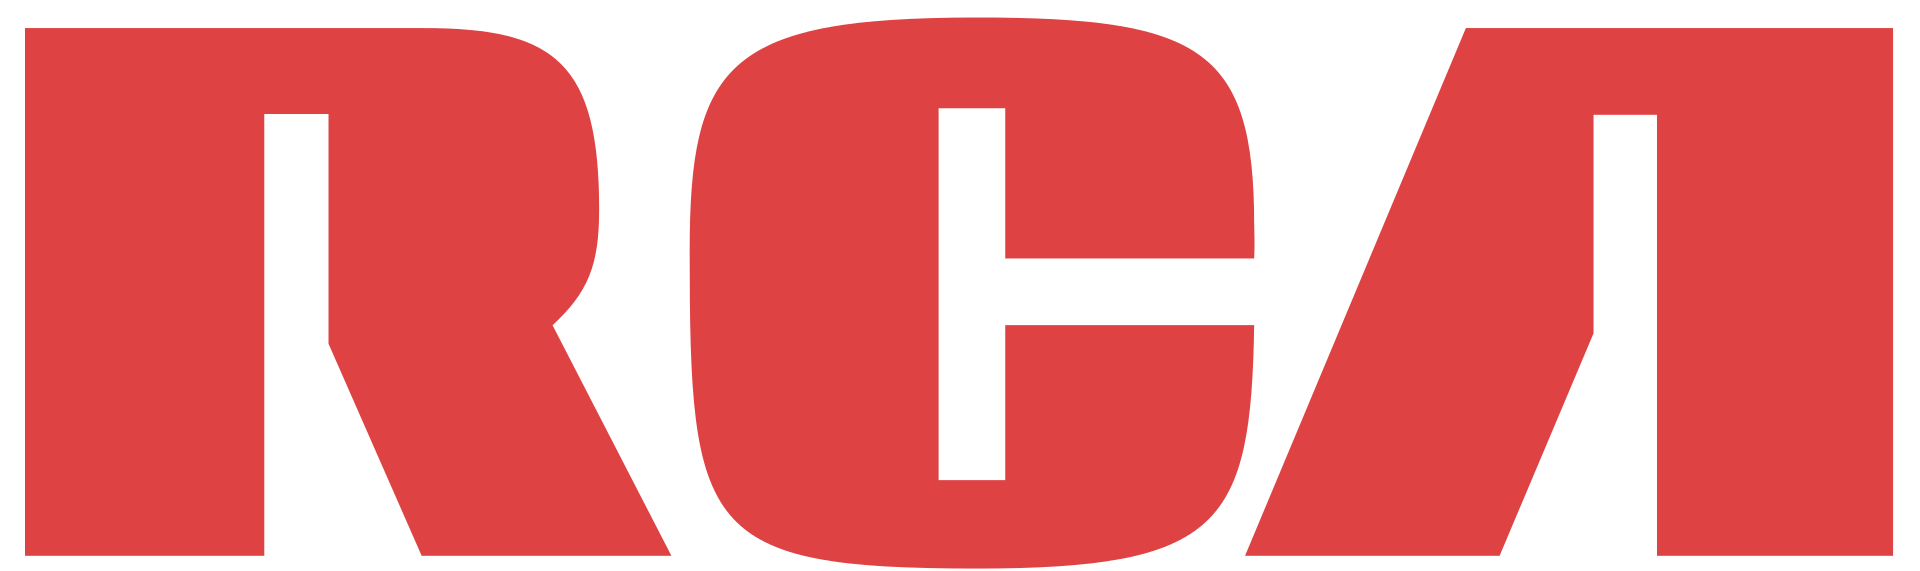 El logotipo original de RCA. Imagen a través de Wikipedia .